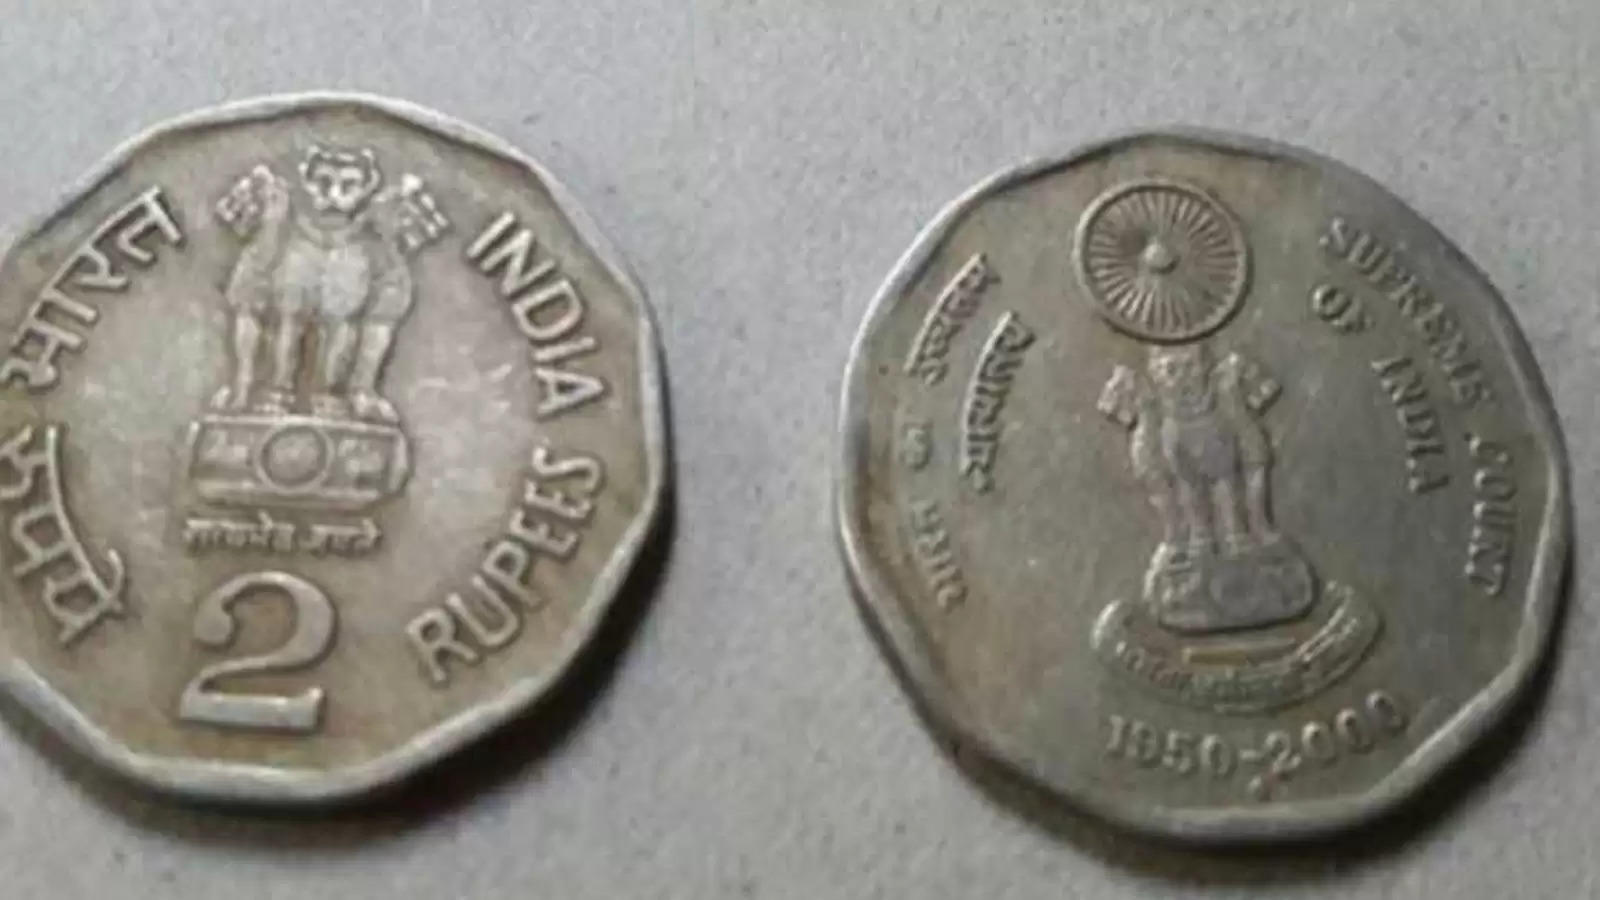 एक 2 रुपये का छोटा सा सिक्का बदल सकता है आपकी किस्मत, रातो रात बरसेगा पैसा 